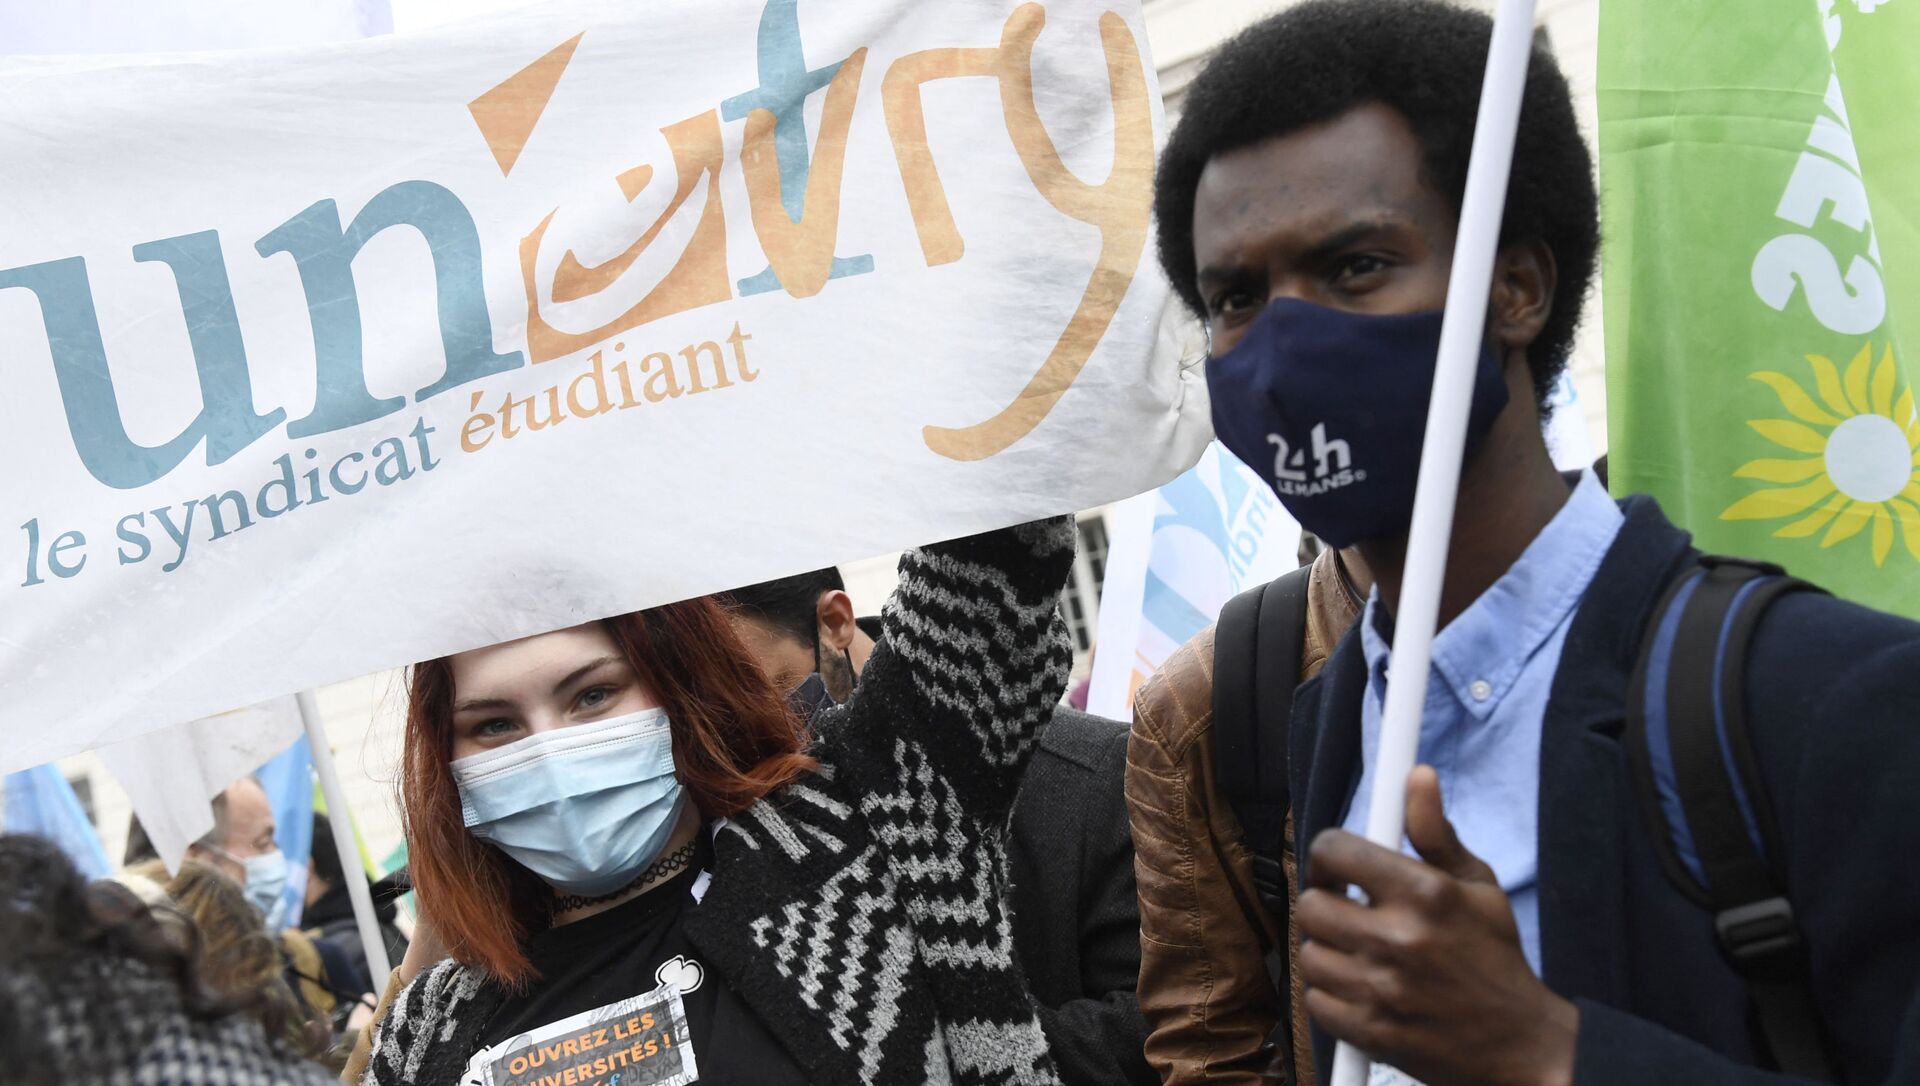 Manifestation de l'Union nationale des étudiants de France (UNEF) contre la précarité étudiante en raison de la crise sanitaire liée à l'épidémie de Covid-19, mars 2021 - Sputnik Afrique, 1920, 19.03.2021